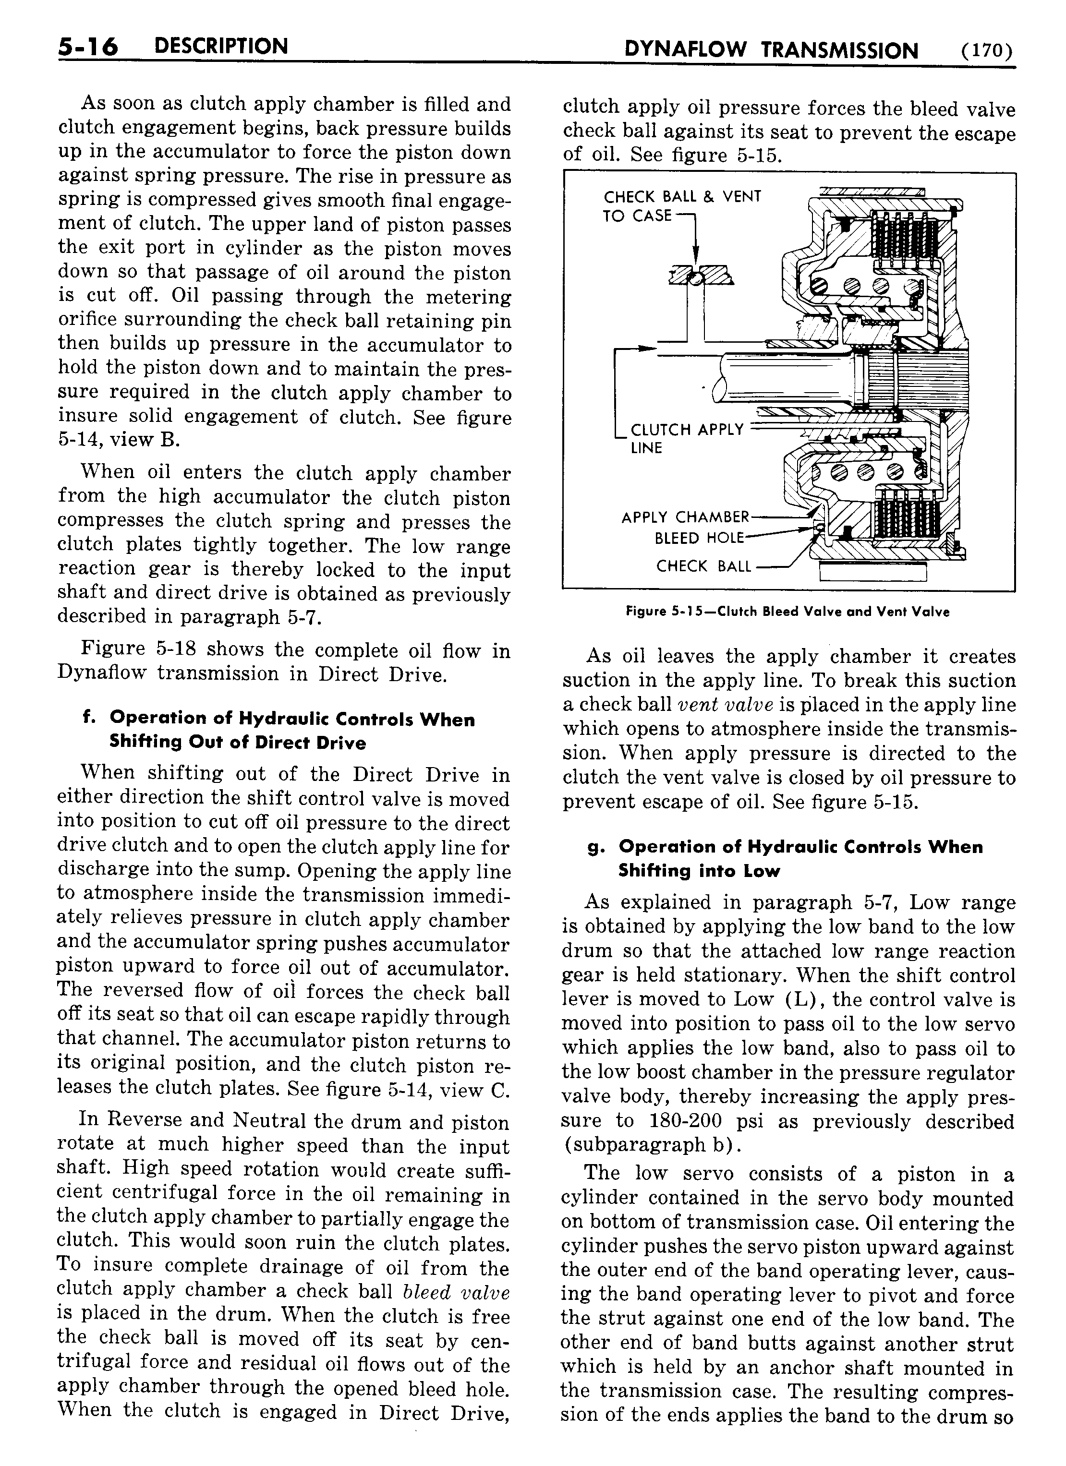 n_06 1954 Buick Shop Manual - Dynaflow-016-016.jpg